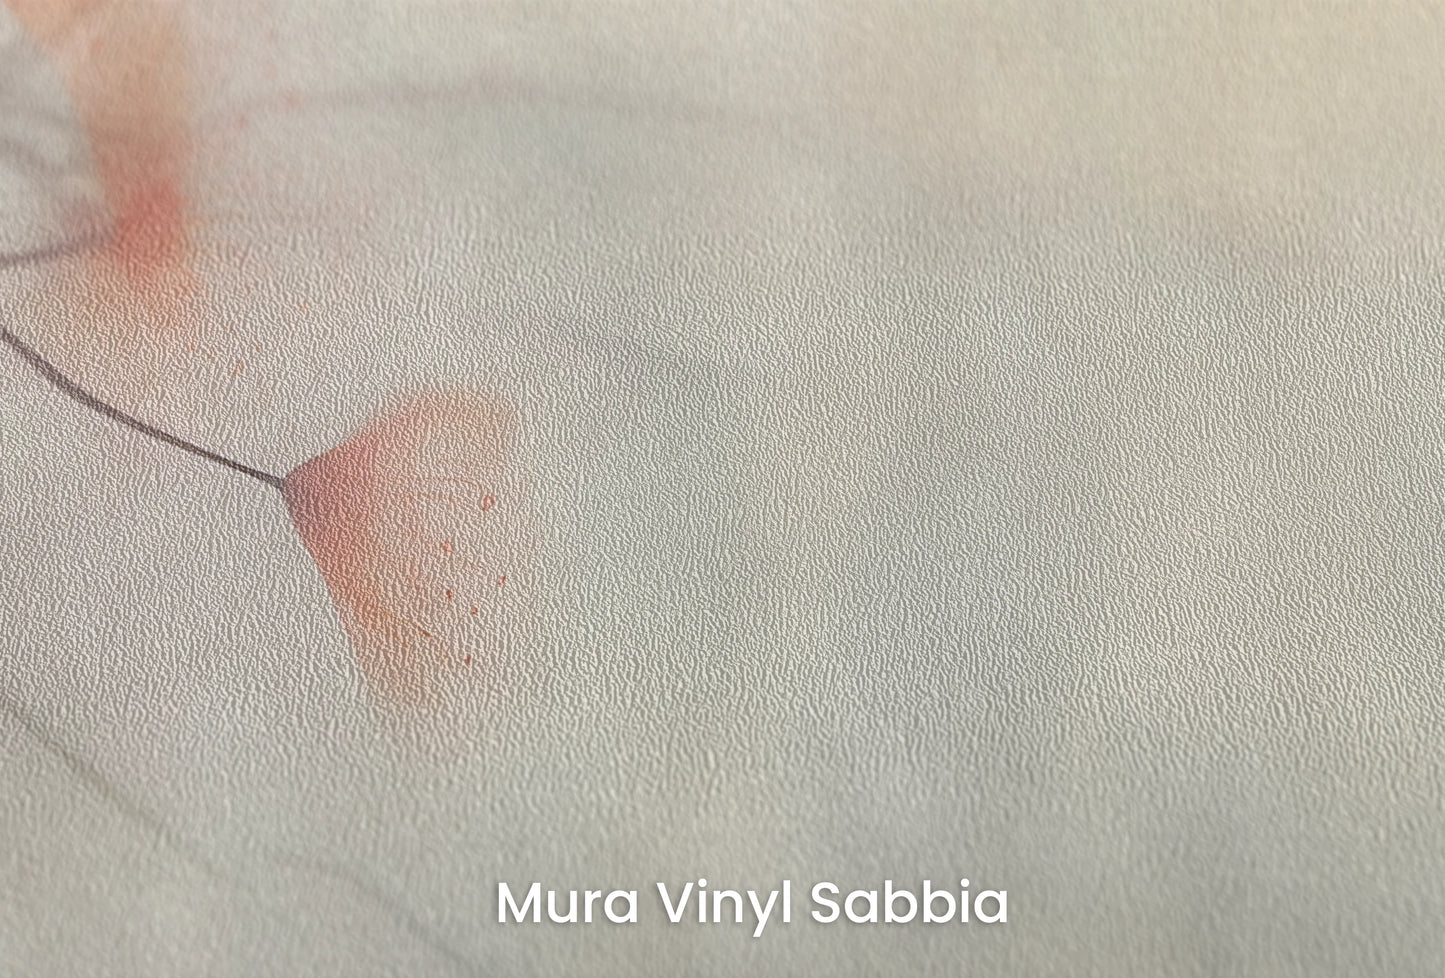 Zbliżenie na artystyczną fototapetę o nazwie Heron's Solitude na podłożu Mura Vinyl Sabbia struktura grubego ziarna piasku.